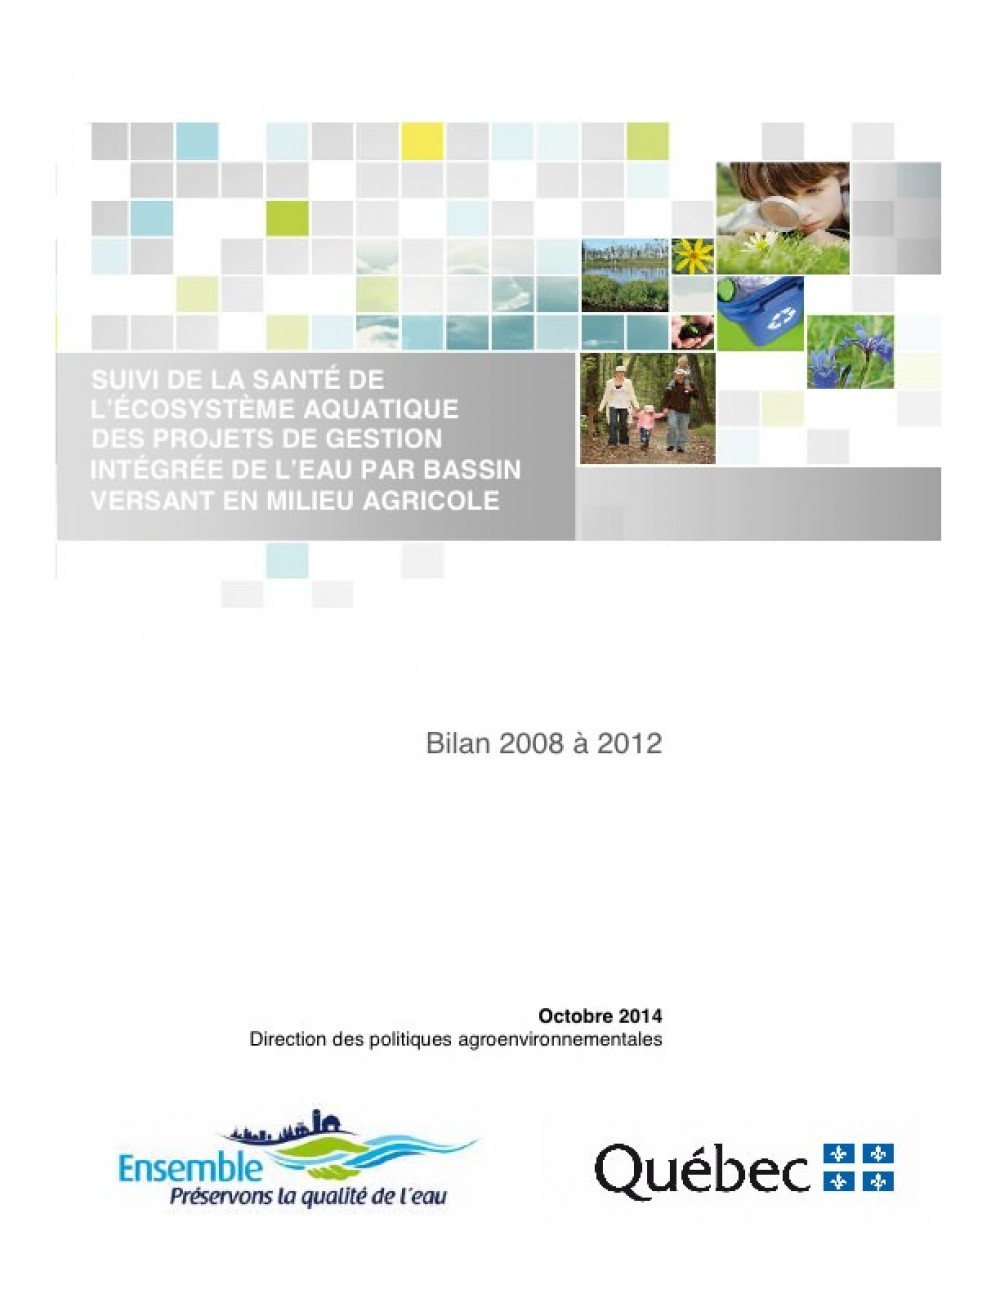 [Québec] Publication : Suivi de la santé de l'écosystème aquatique des projets de gestion intégrée de l'eau par bassin versant en milieu agricole - Bilan 2008 à 2012